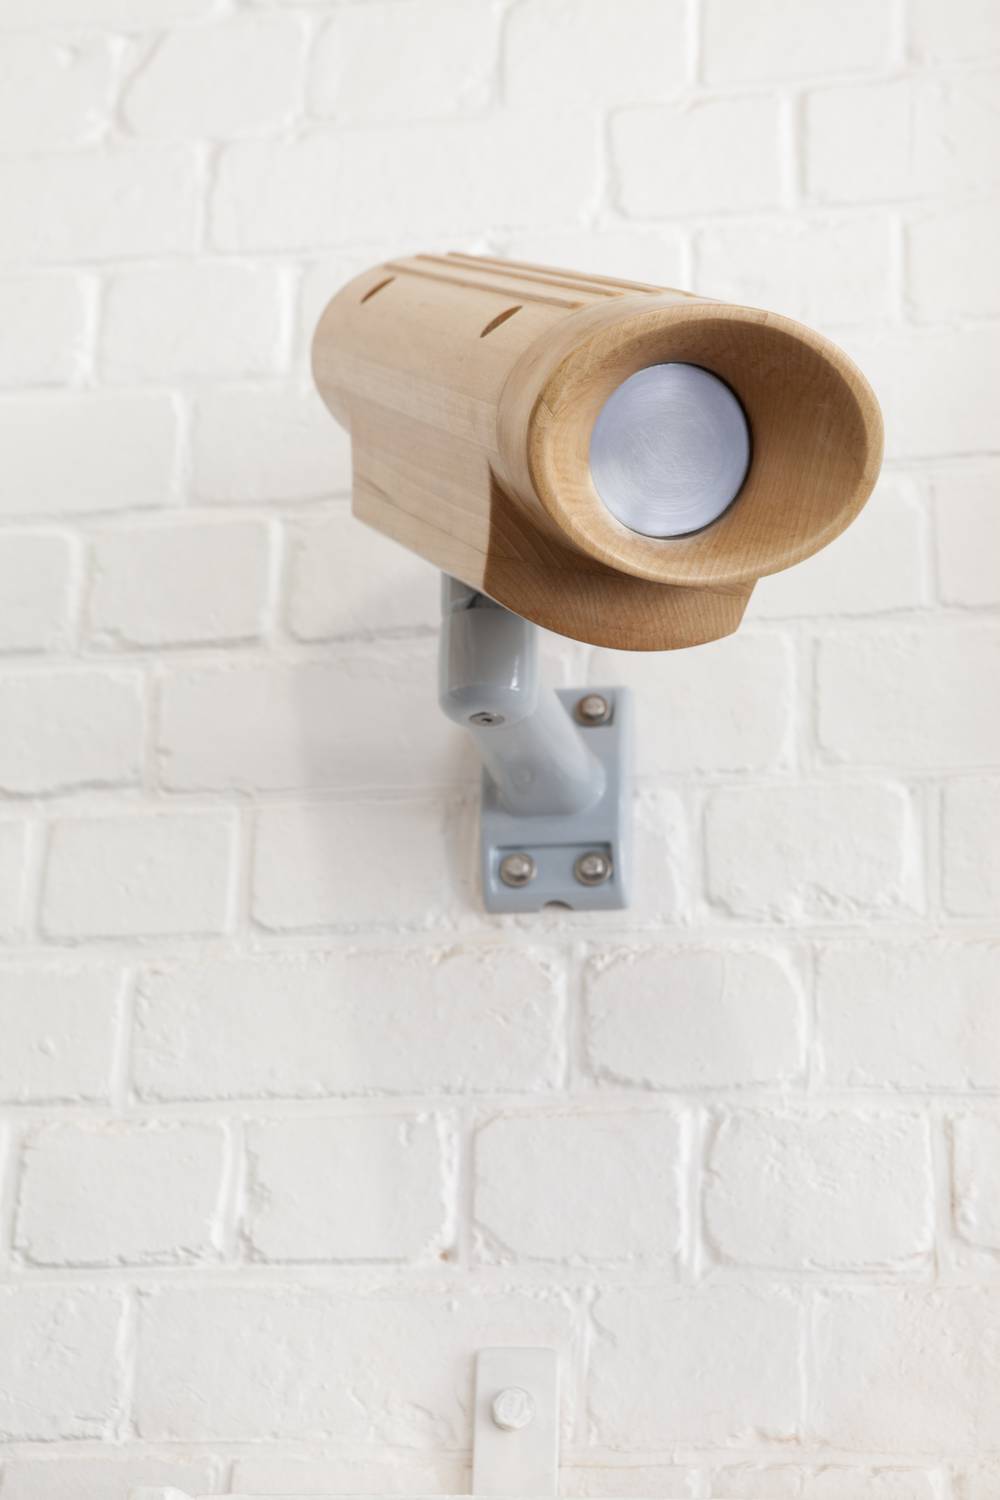 Security Camera (Beech), 2015 - Johann van der Schijff